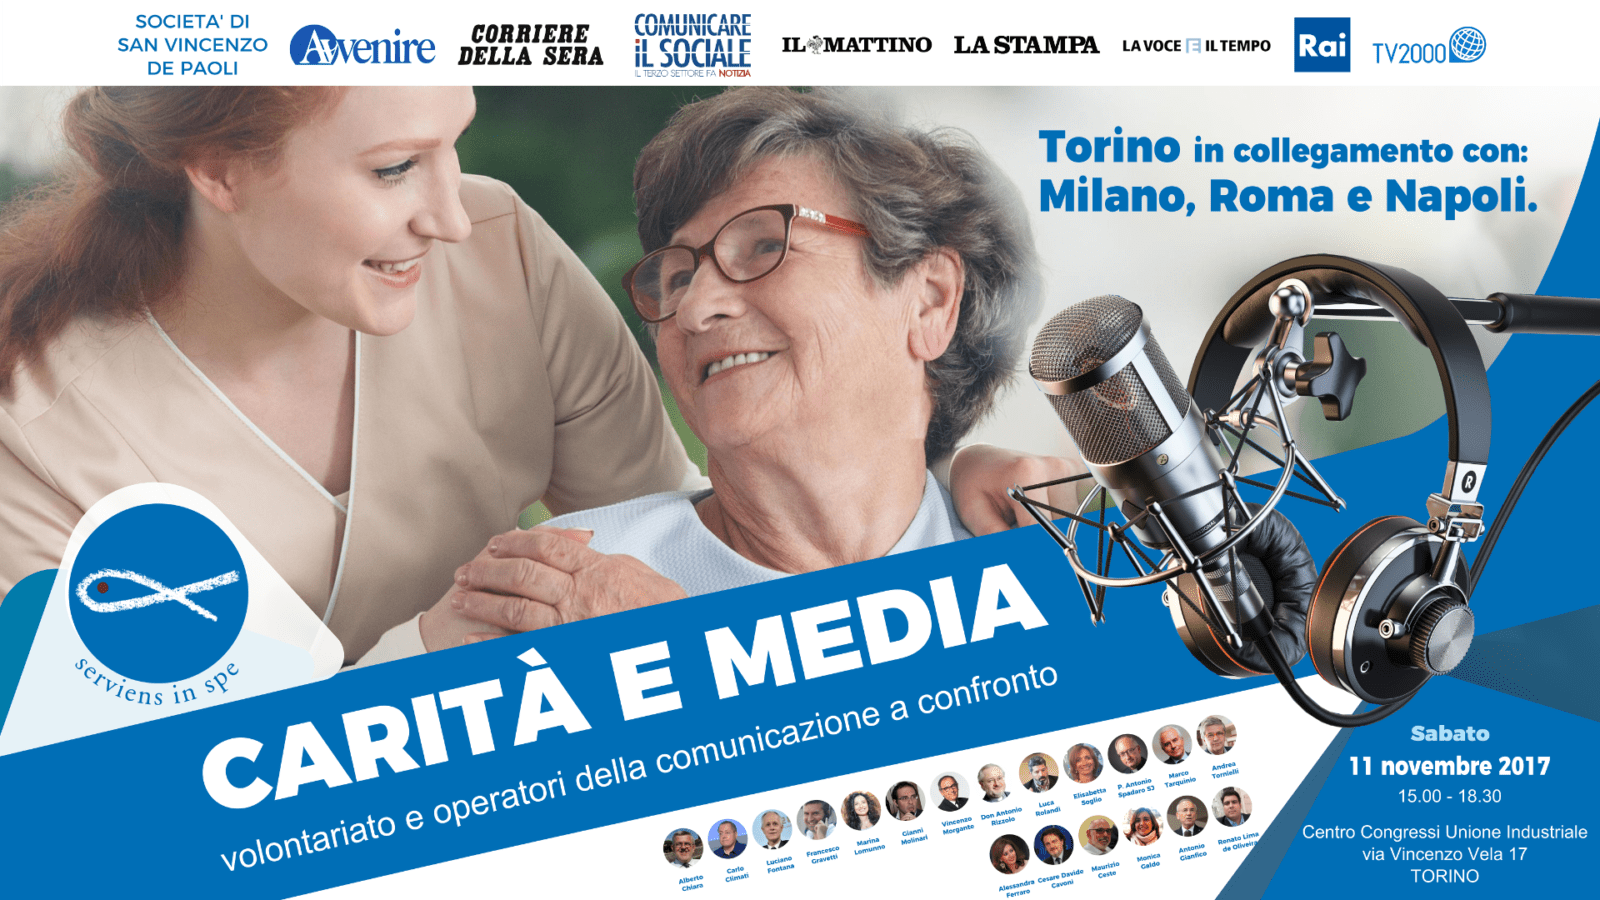 Carità e Media, 11 novembre: le più celebri firme del giornalismo italiano incontrano il mondo del volontariato